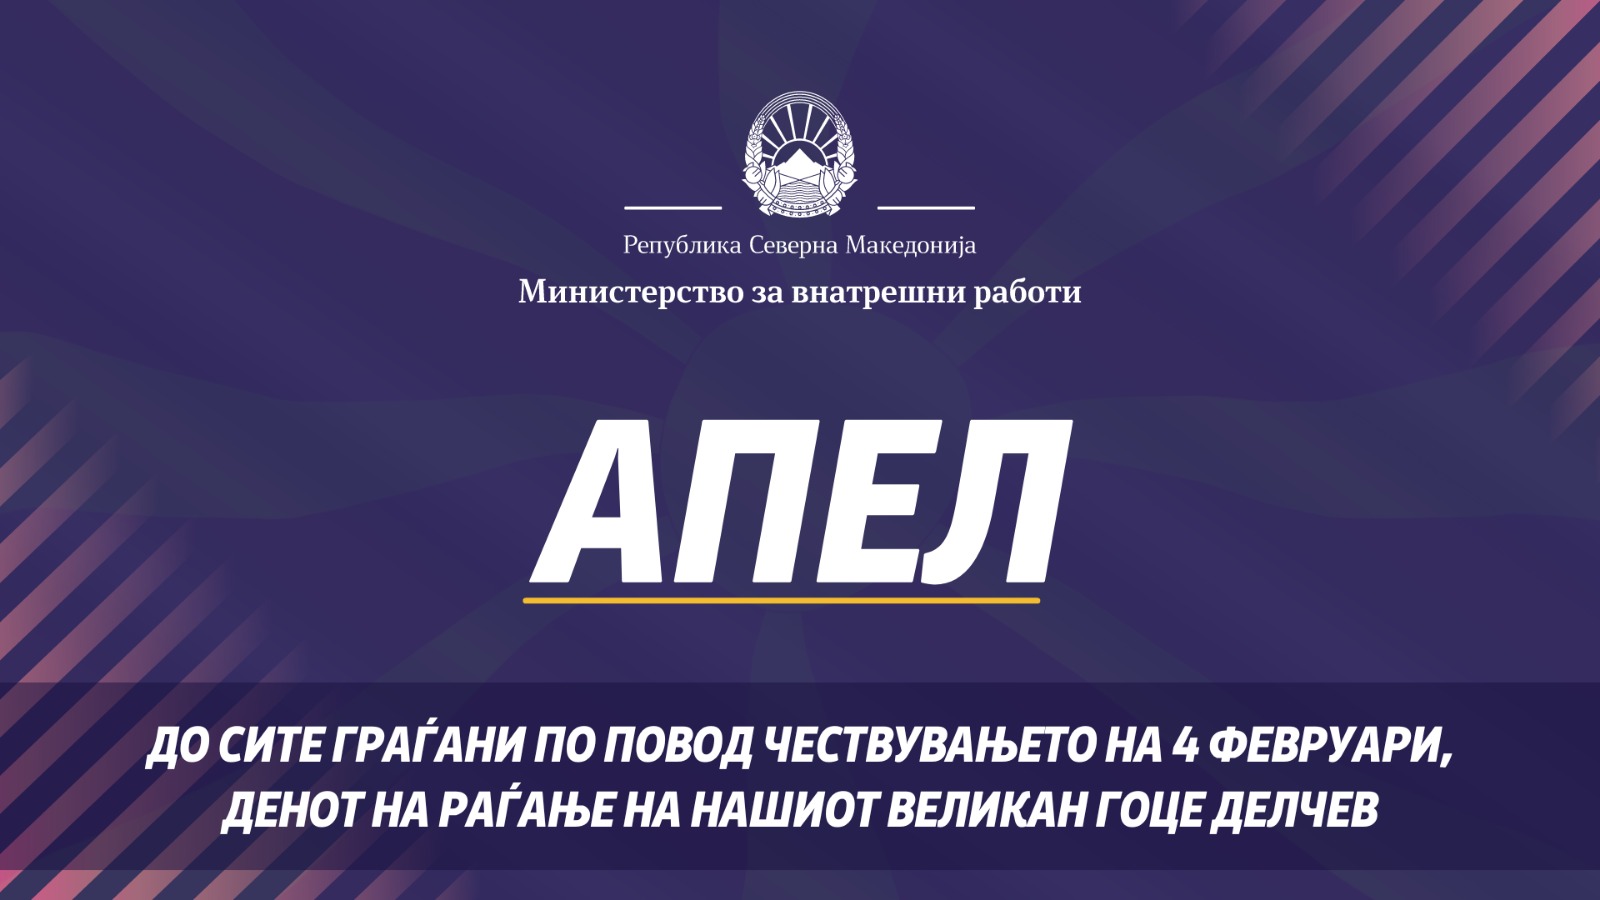 Спасовски: Апел за смиреност до сите граѓани по повод чествувањето на нашиот великан Гоце Делчев